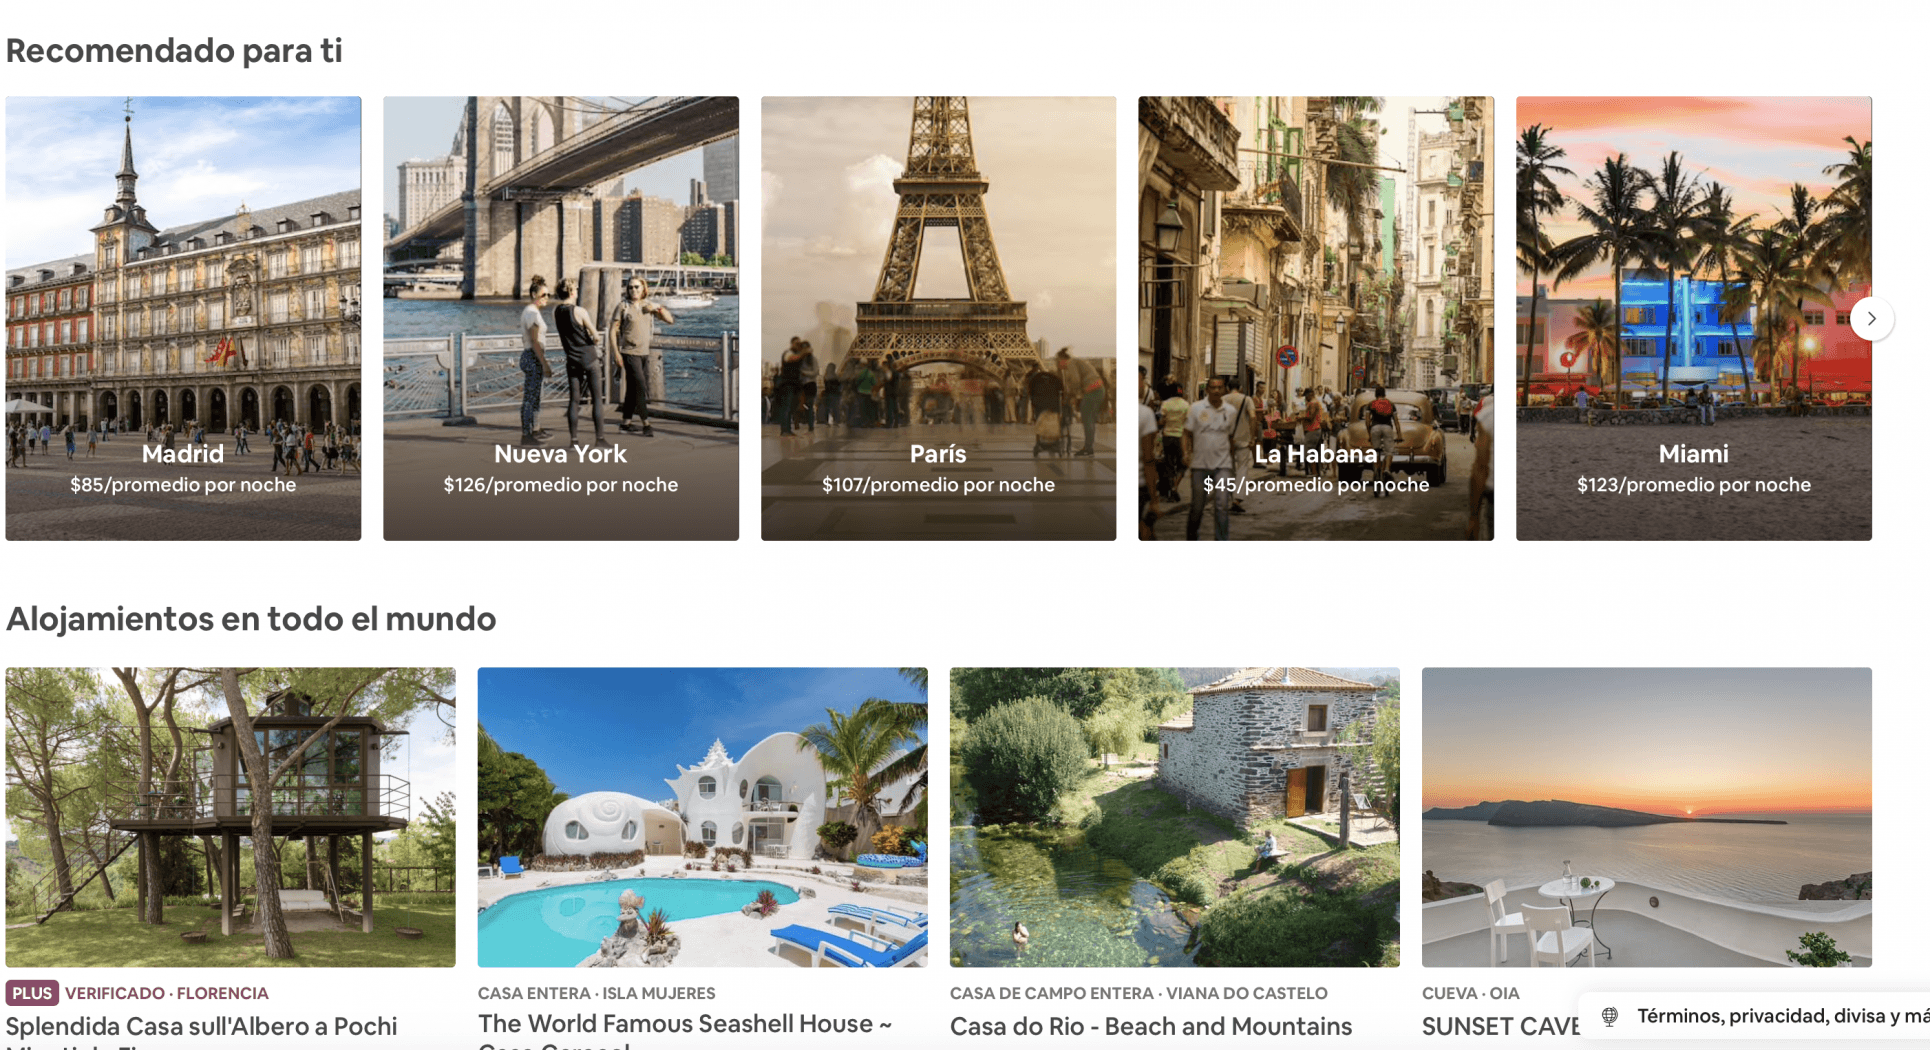 Más de 250 mil ticos usaron Airbnb en el exterior y 125.000 dentro del país